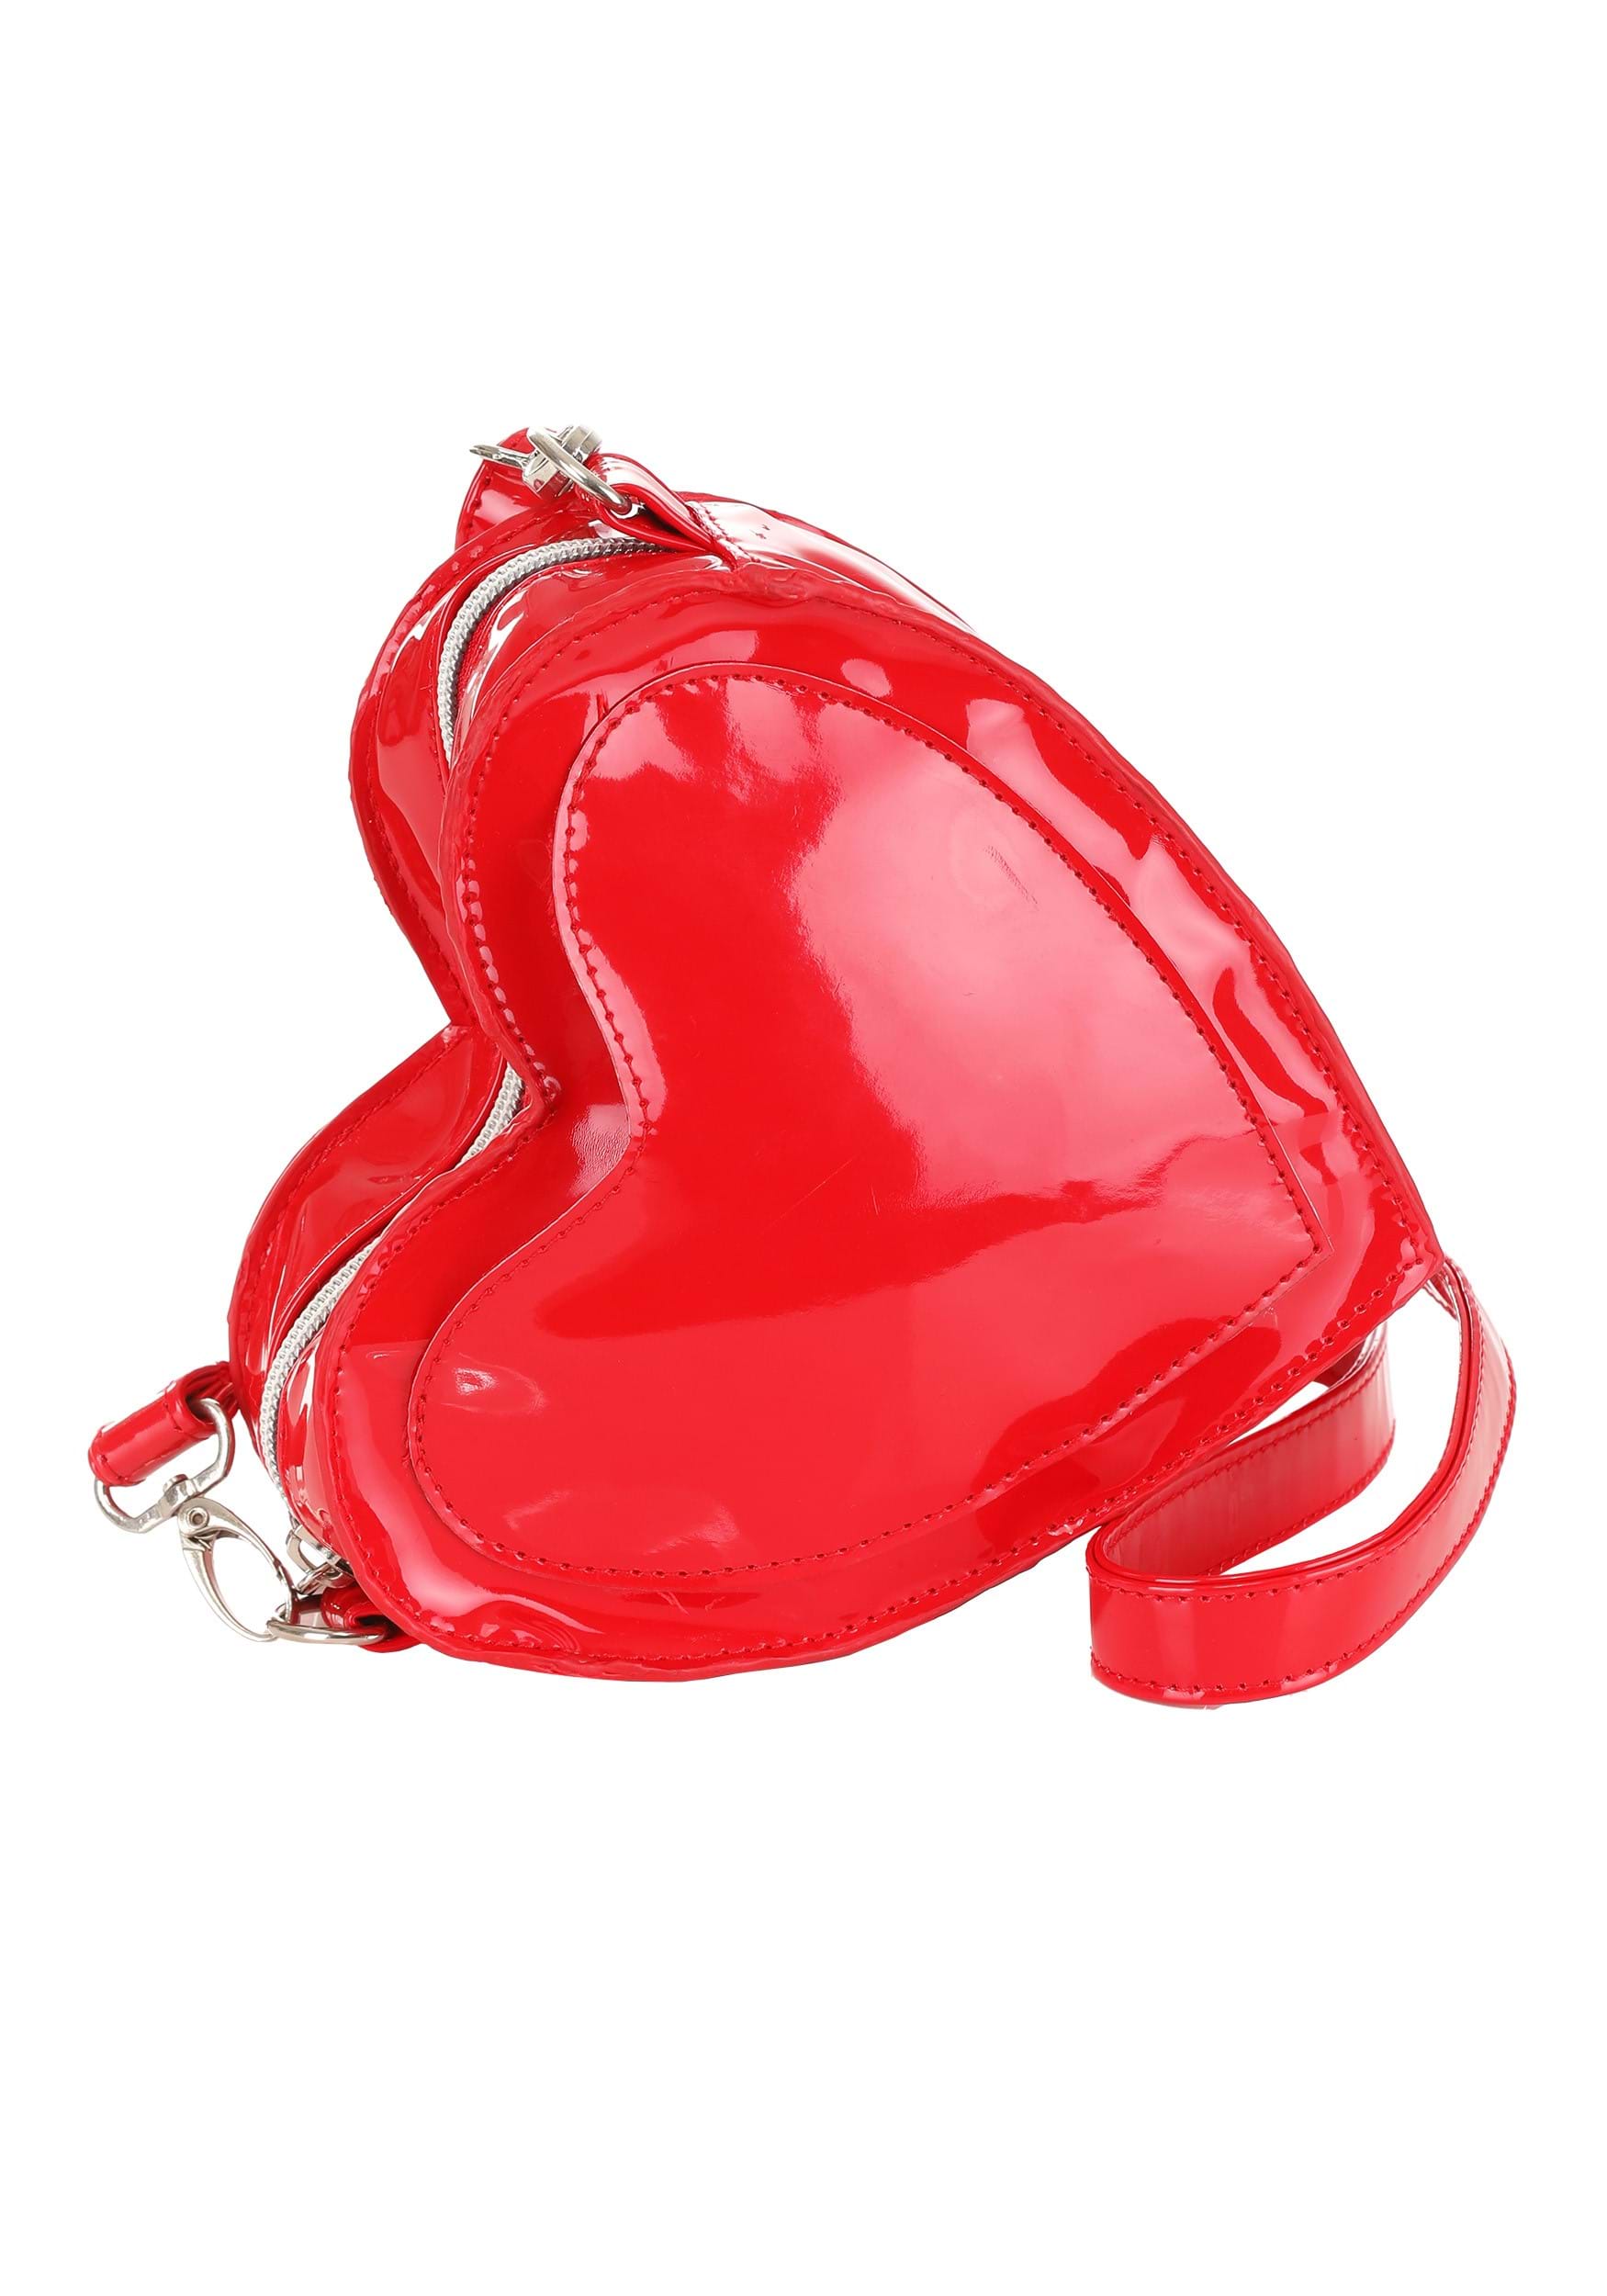 My Valentine Red Heart Purse | Valentine's Day Accessories